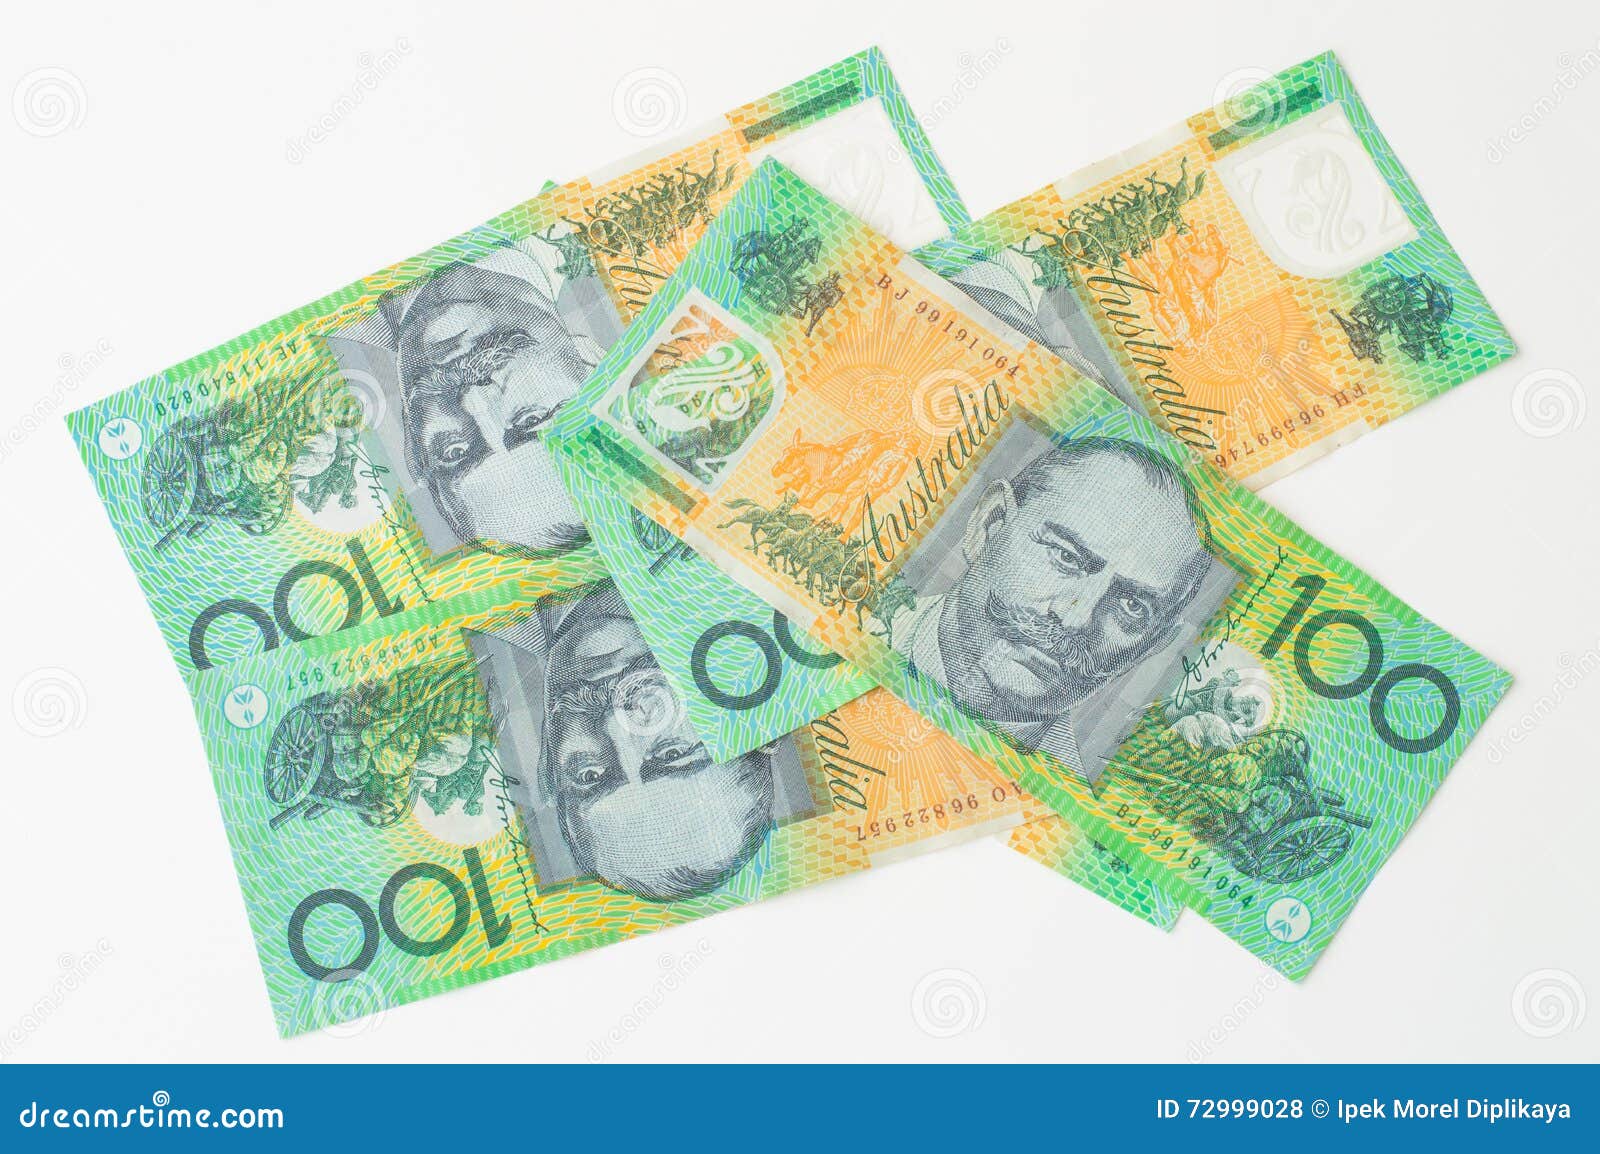 澳大利亚纸币和硬币 库存图片. 图片 包括有 关闭, 现金, 广告牌, 部分, 货币, 班珠尔, 硬币, 附注 - 54107185